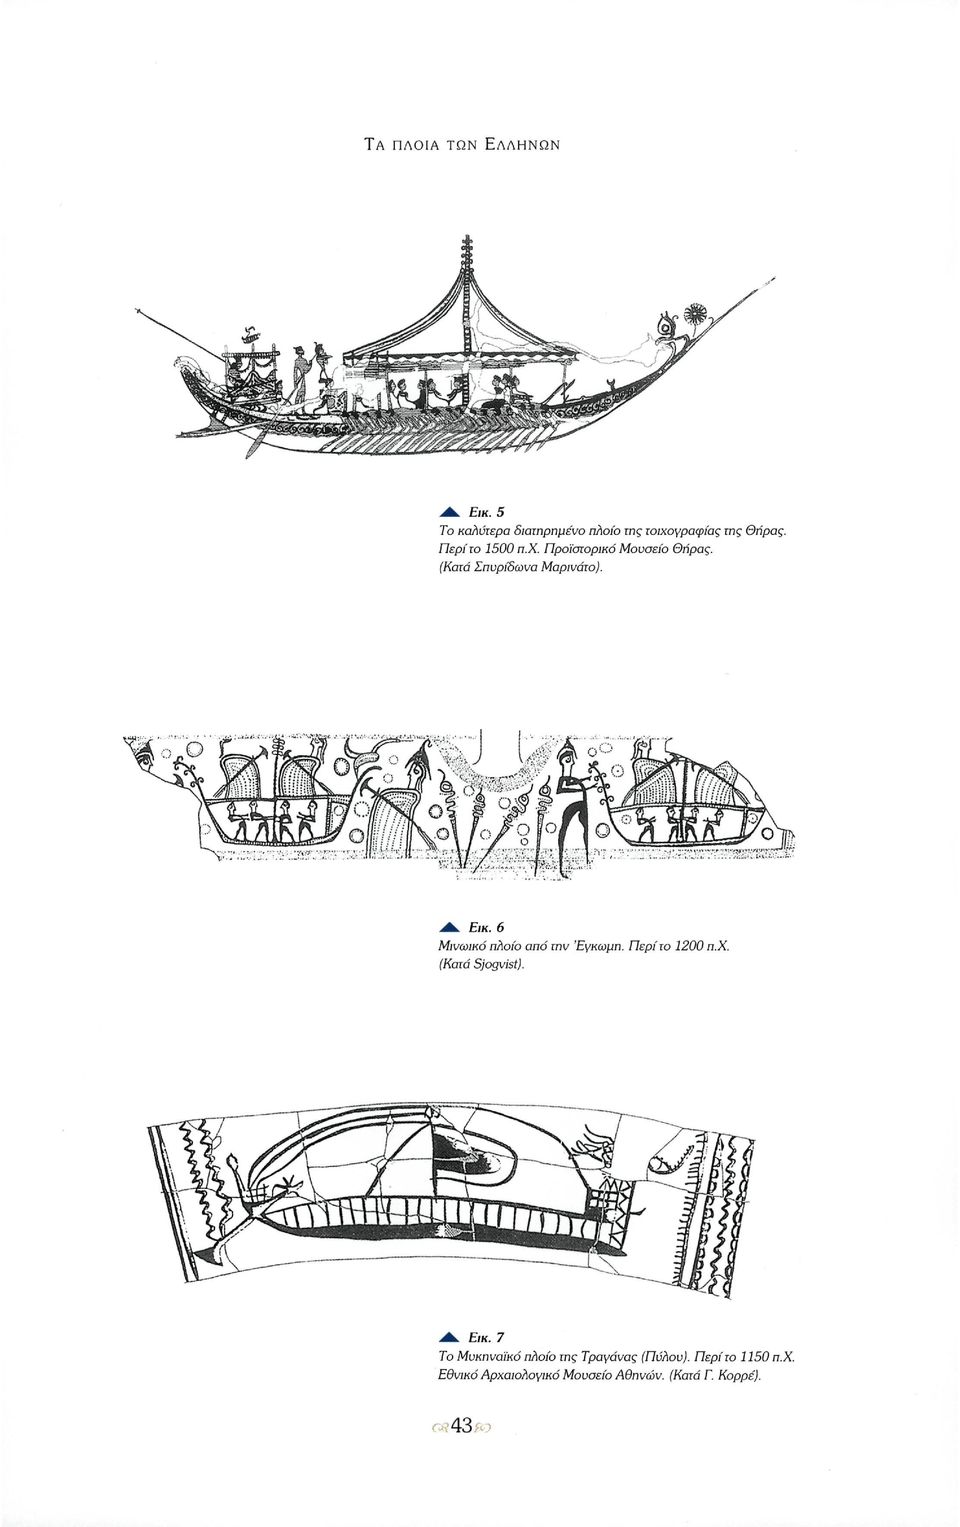 6 Μινωικό πλοίο από την Έγκωμη. Περί το 1200 π.χ. (Κατά Sjogvist). Εικ.